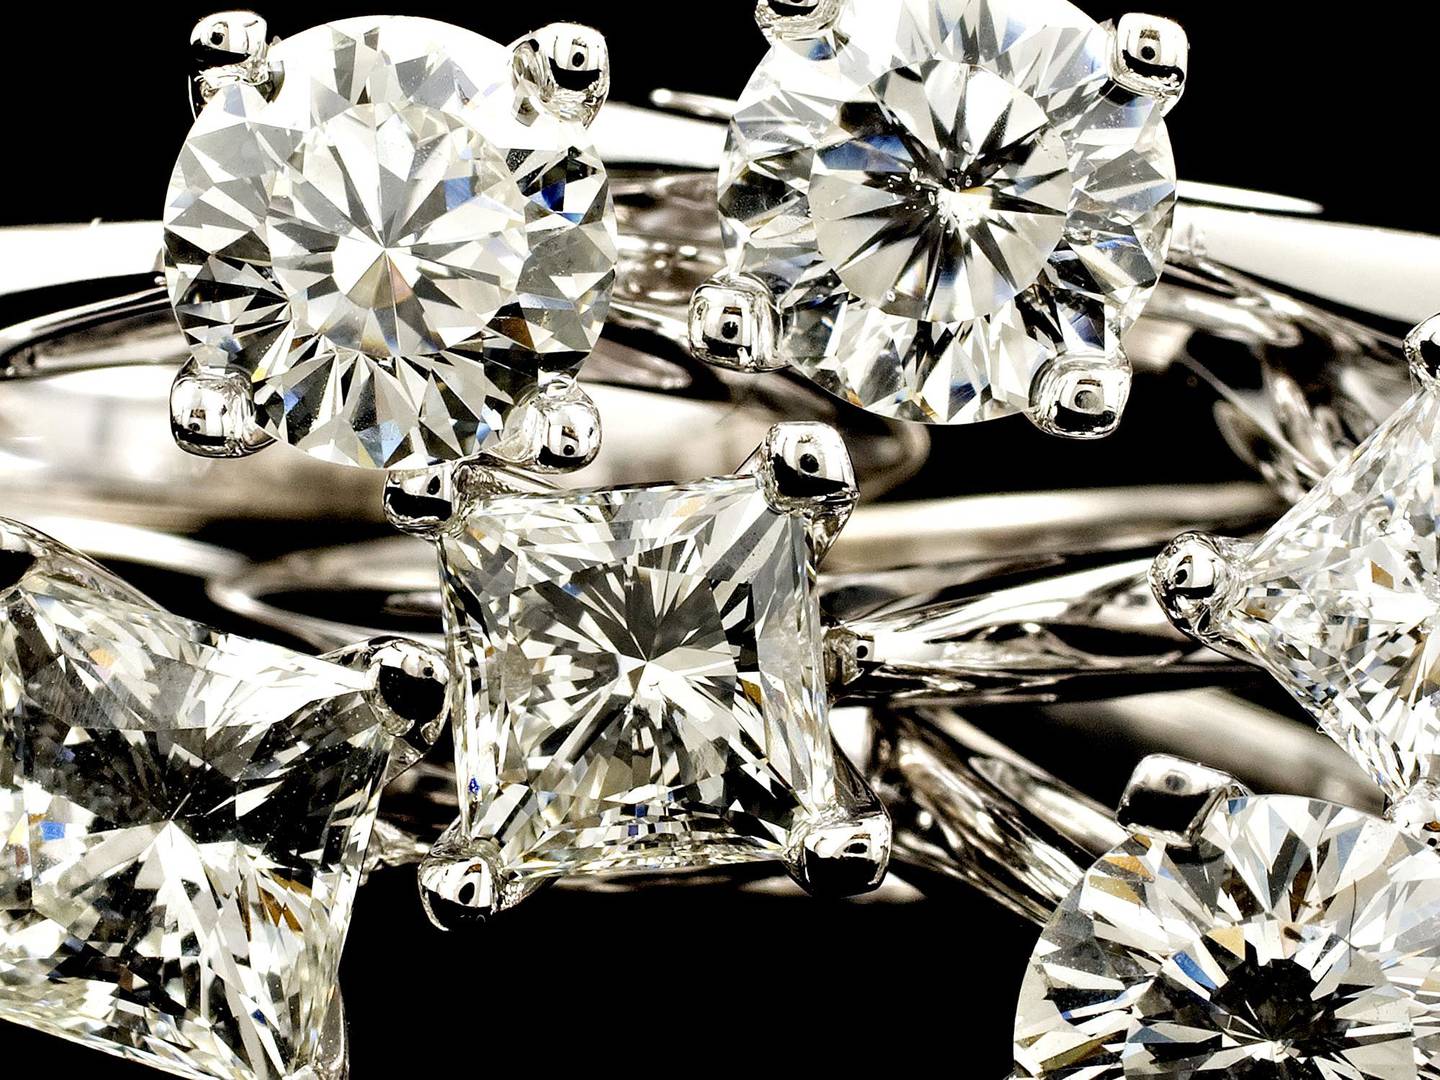 Anillos de compromiso de diamantes de la colección Zales Celebration Diamond se exponen en una tienda Zales de Nueva York, Estados Unidos, el martes 15 de septiembre de 2009. La colección Celebration Diamond presenta piedras talladas con 102 facetas patentadas.dfd